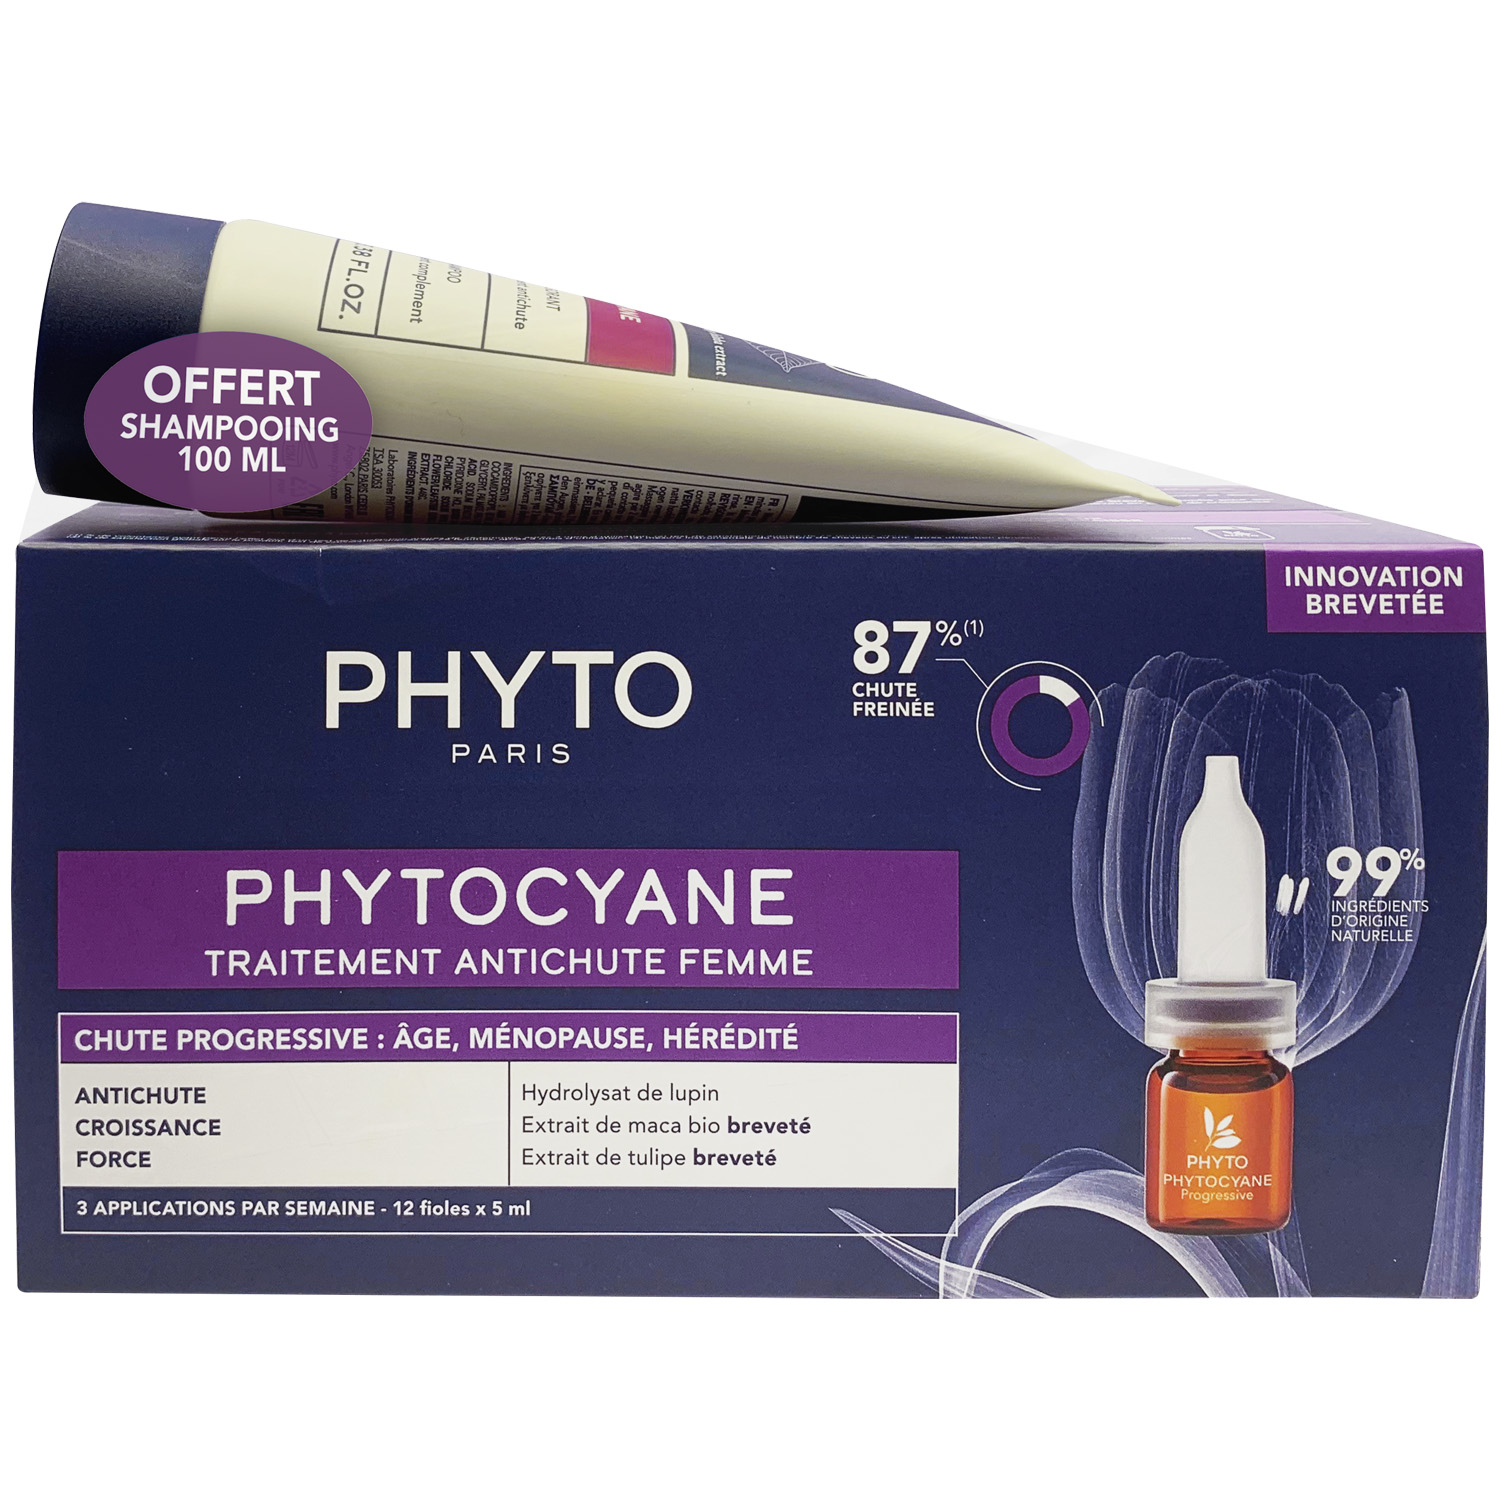 Phyto Набор для женщин: сыворотка от выпадения волос 12х 5мл + укрепляющий шампунь 100 мл (Phyto, Phytocyane) phyto сыворотка против выпадения волос для женщин 12 ампул х 5 мл phyto phytocyane